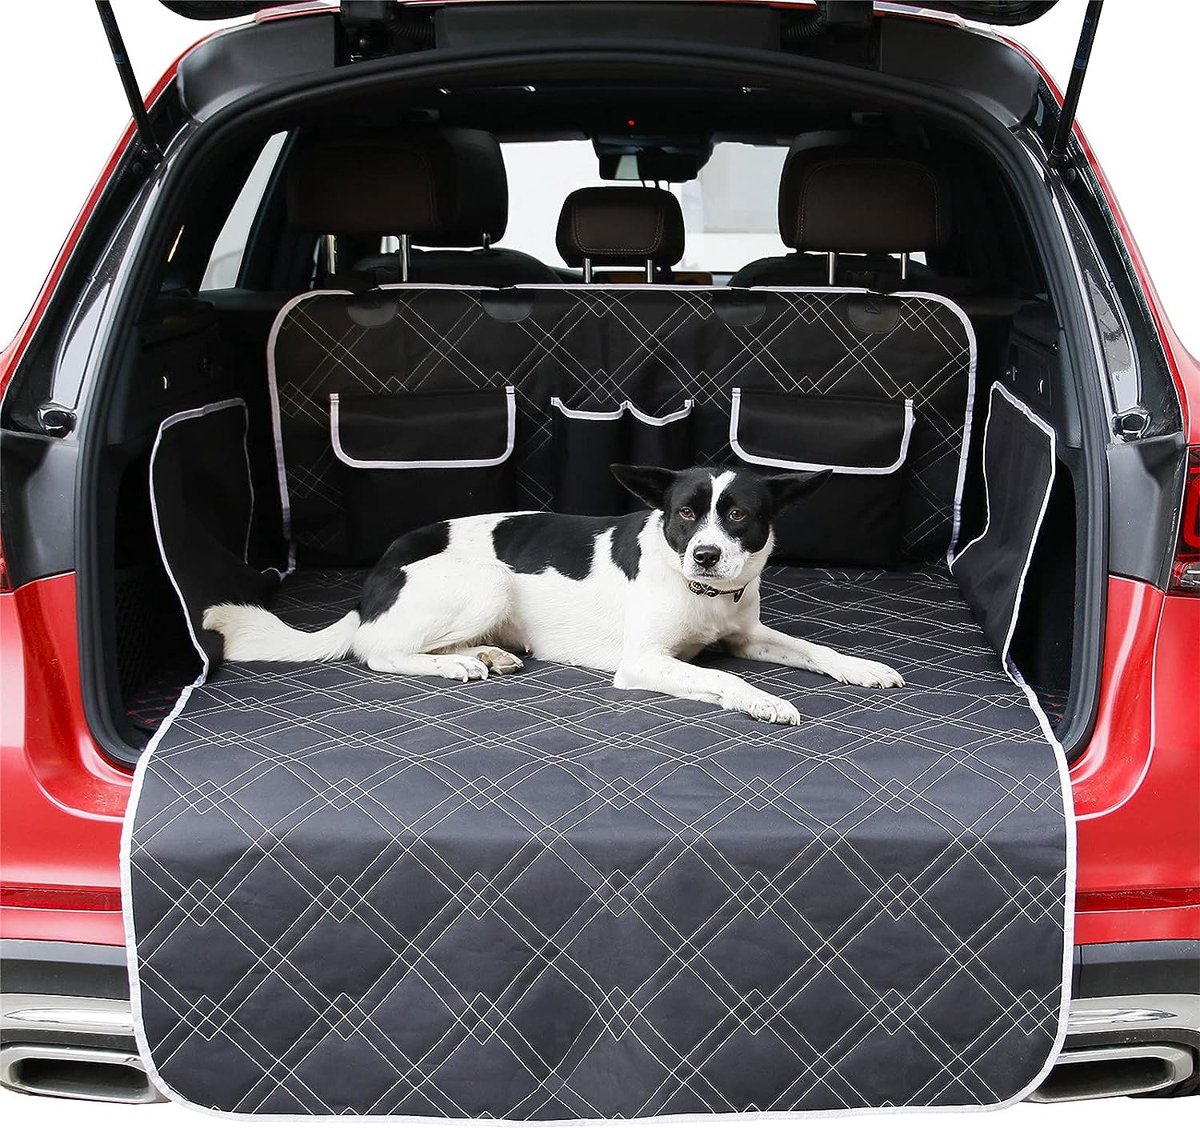 Housse de protection pour coffre. Housses de protection des chats et chiens  pour le transport en voiture.